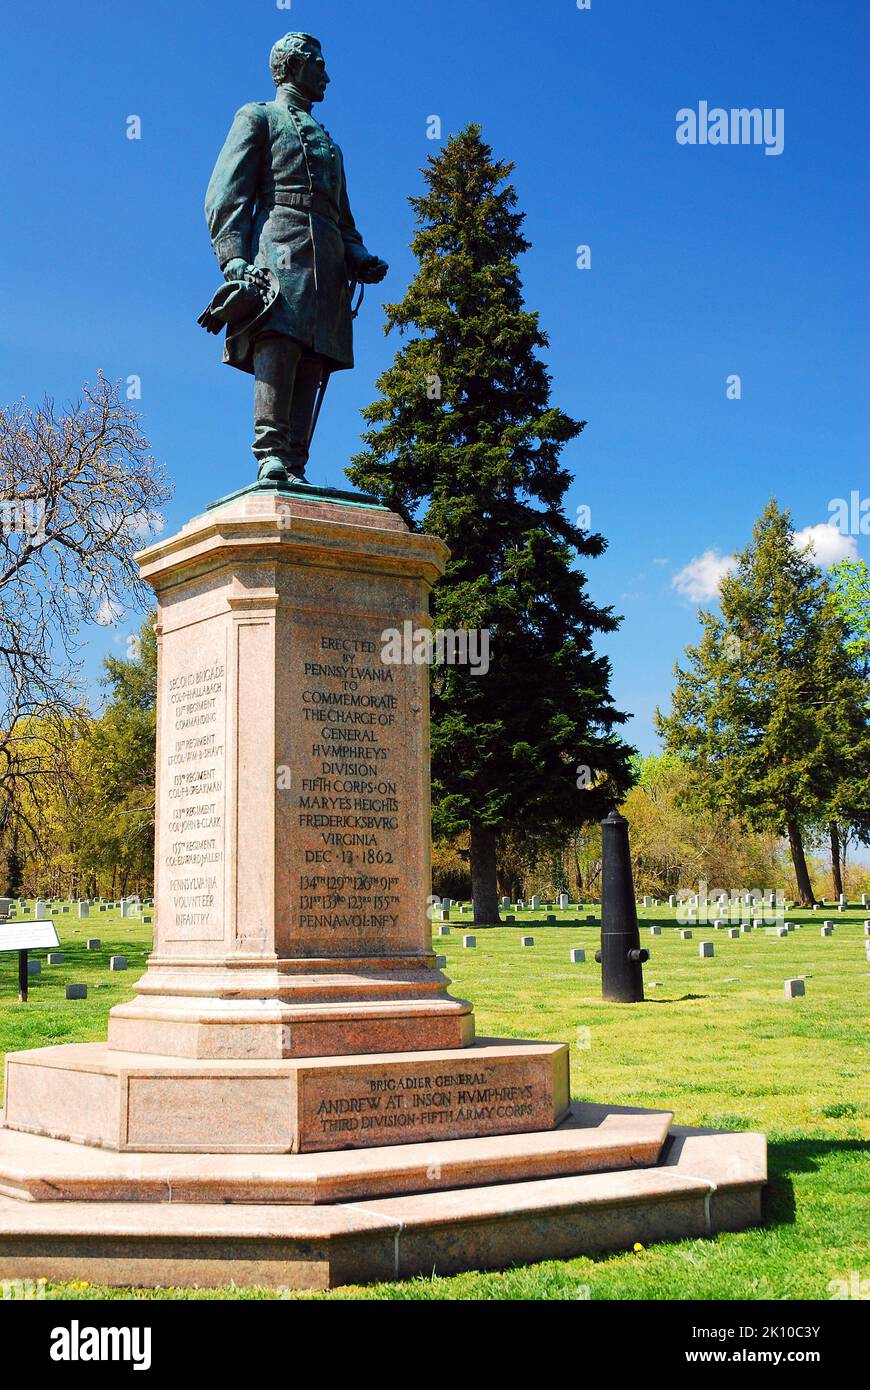 Una statua che onora la Divisione Pennsylvania del Generale Humphrey si trova in un cimitero militare della Guerra civile a Fredericksburg, Virginia Foto Stock